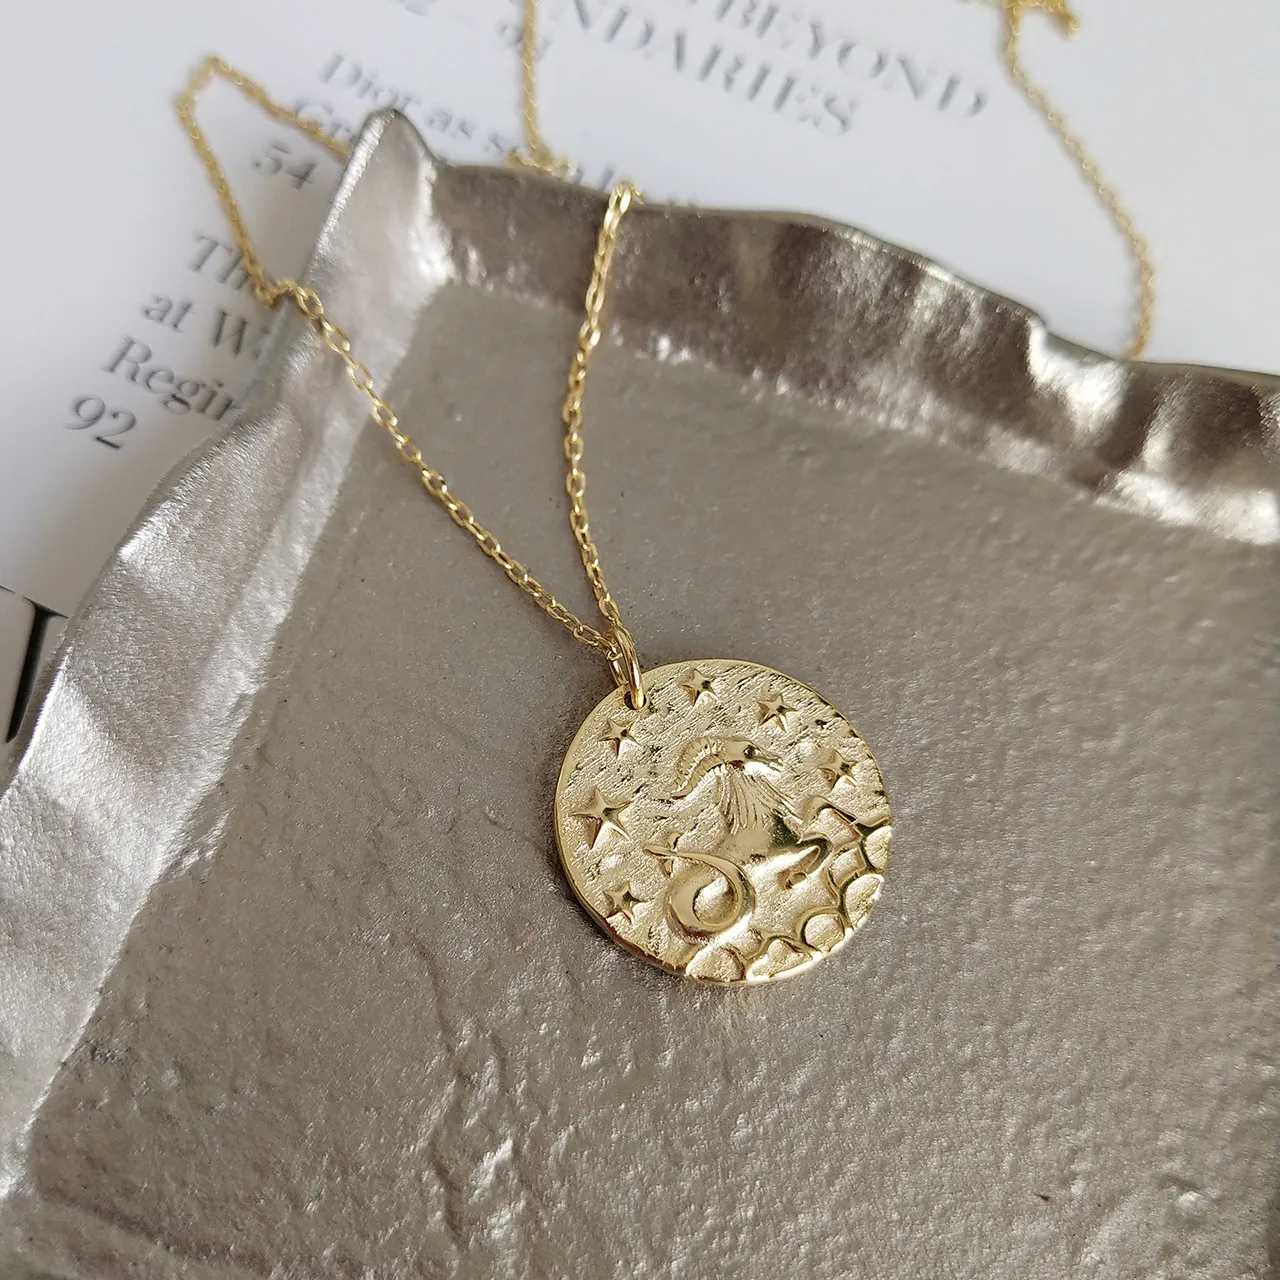 12 constelações signo do zodíaco estatueta moeda colar em 925 prata esterlina horóscopos jóias femininas medalha de ouro colar feminino cx270d